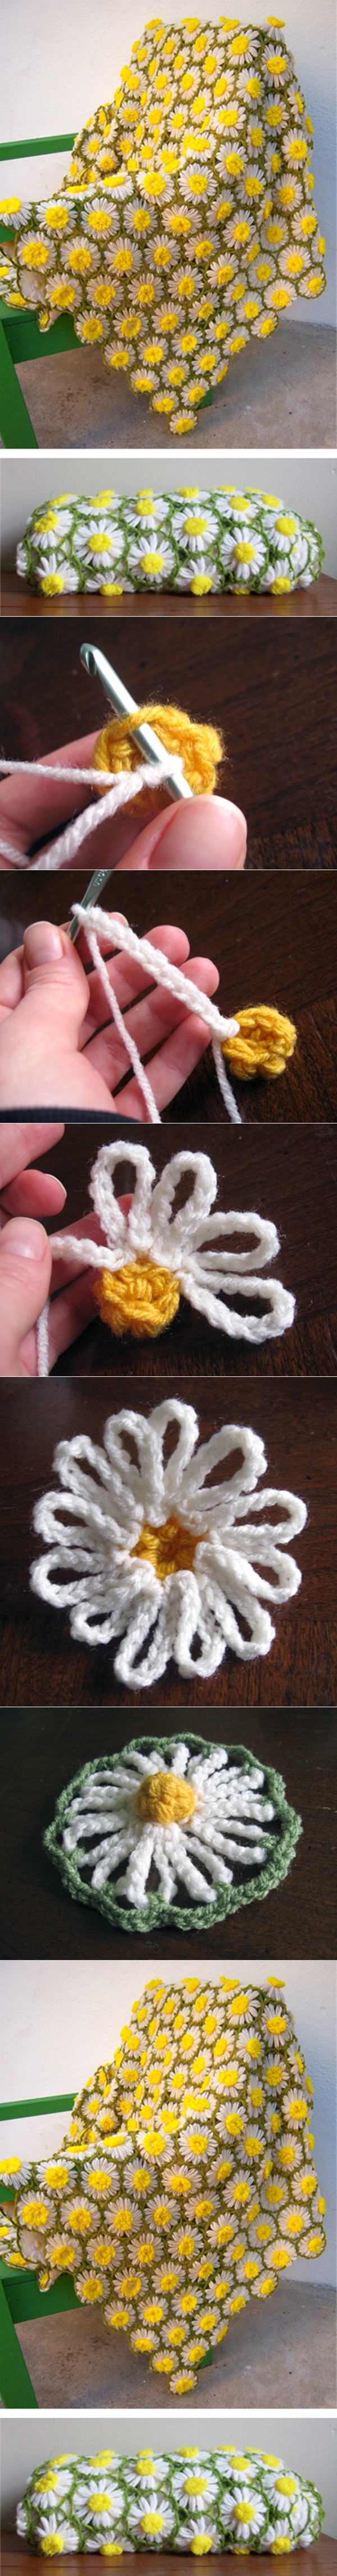 Crochet Daisy Motif Blanket M